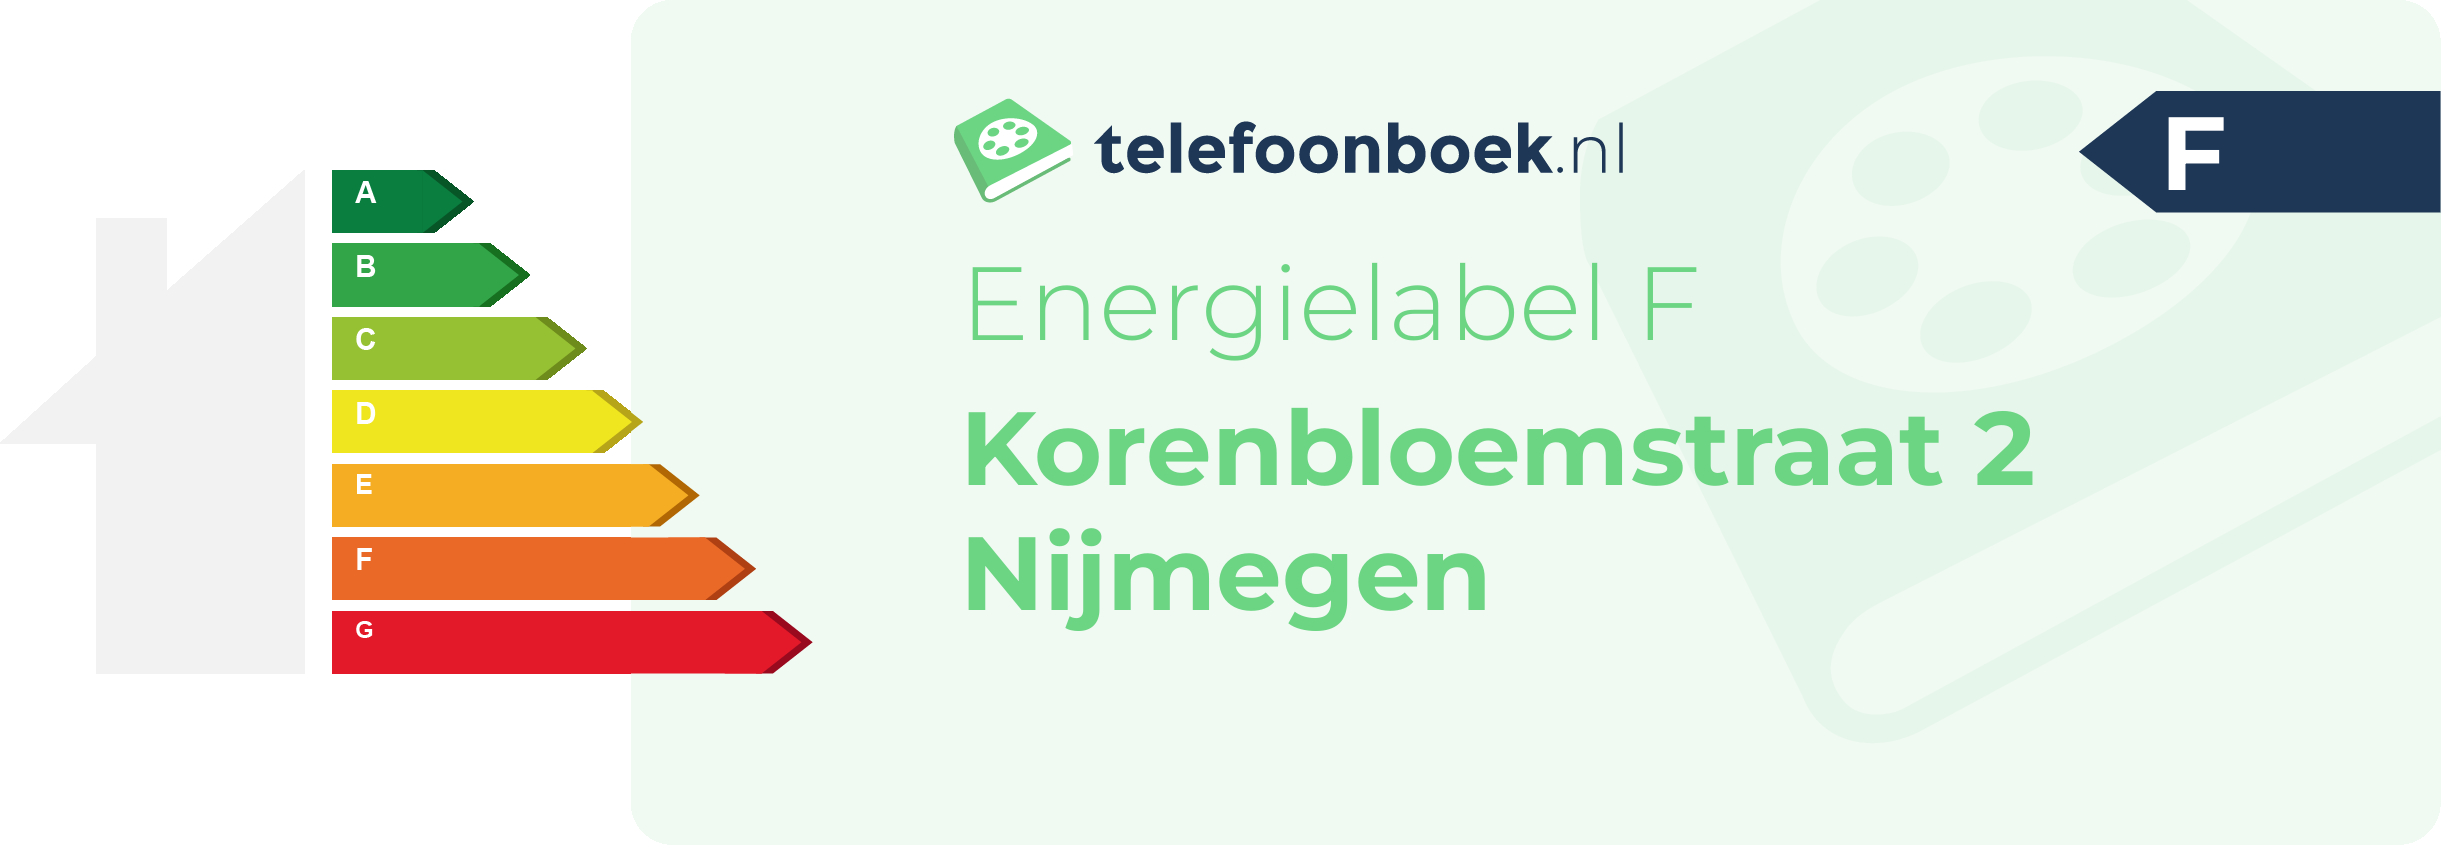 Energielabel Korenbloemstraat 2 Nijmegen